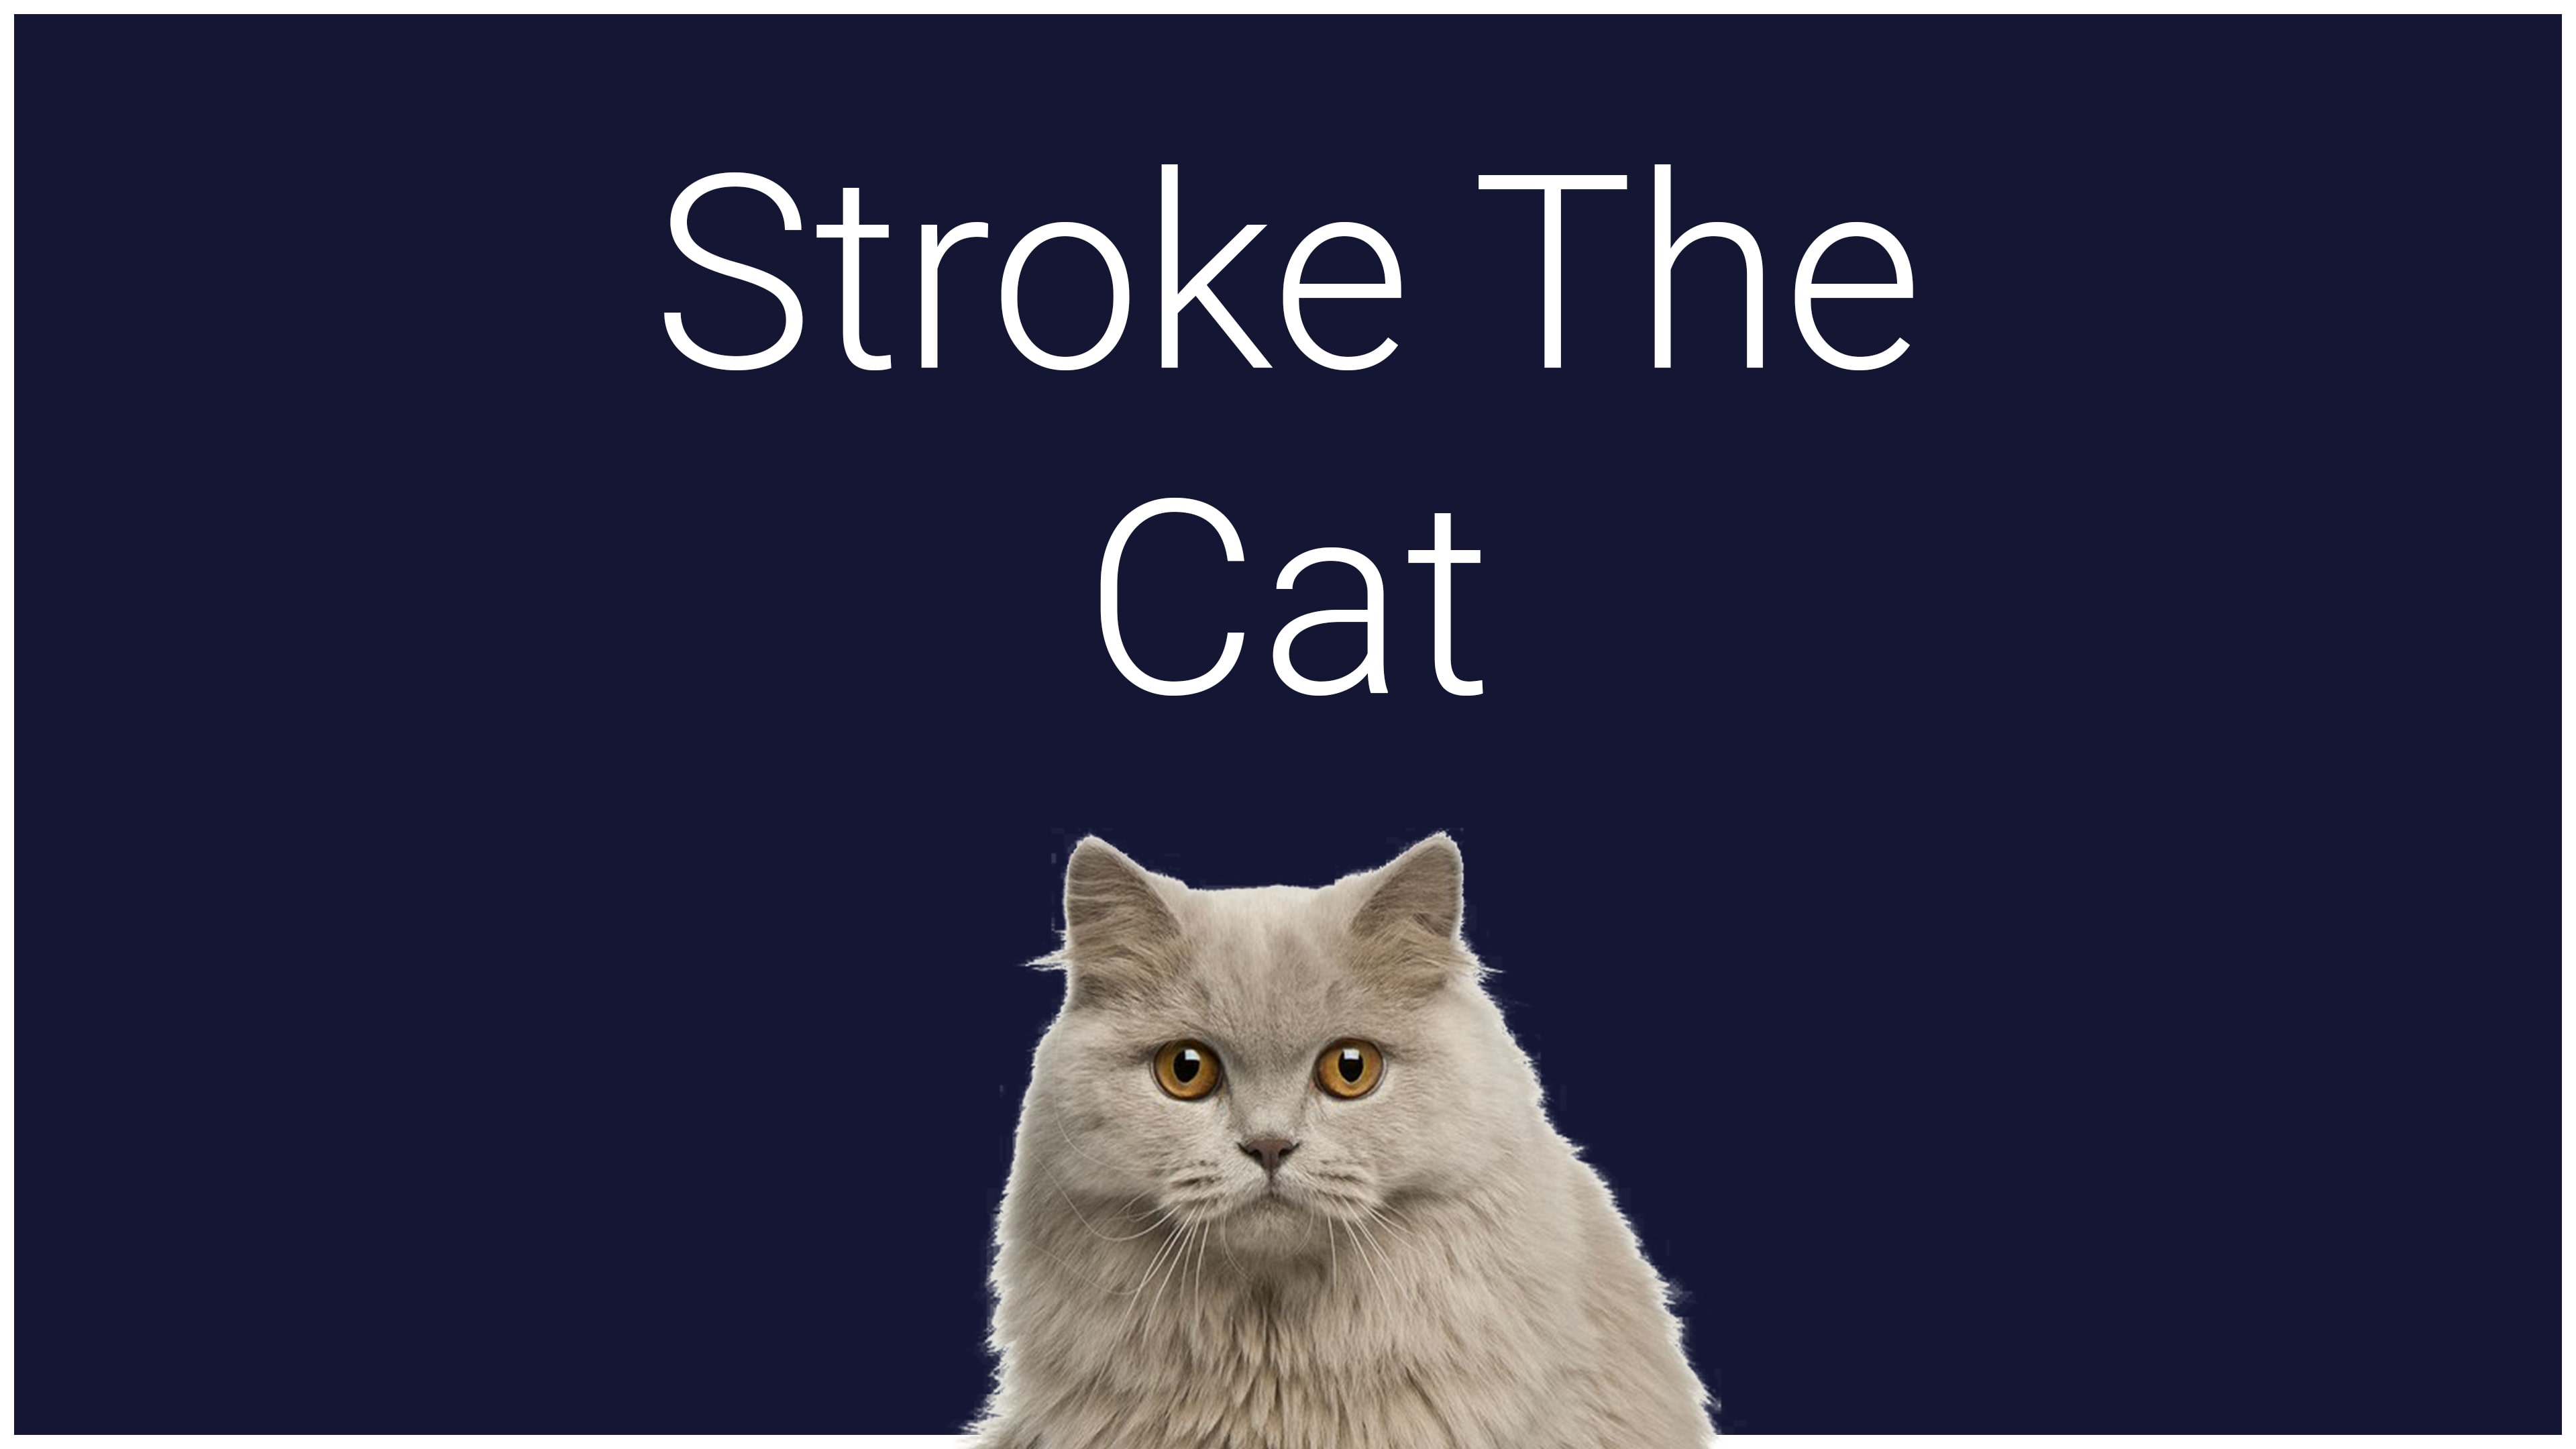 Stroke The Cat